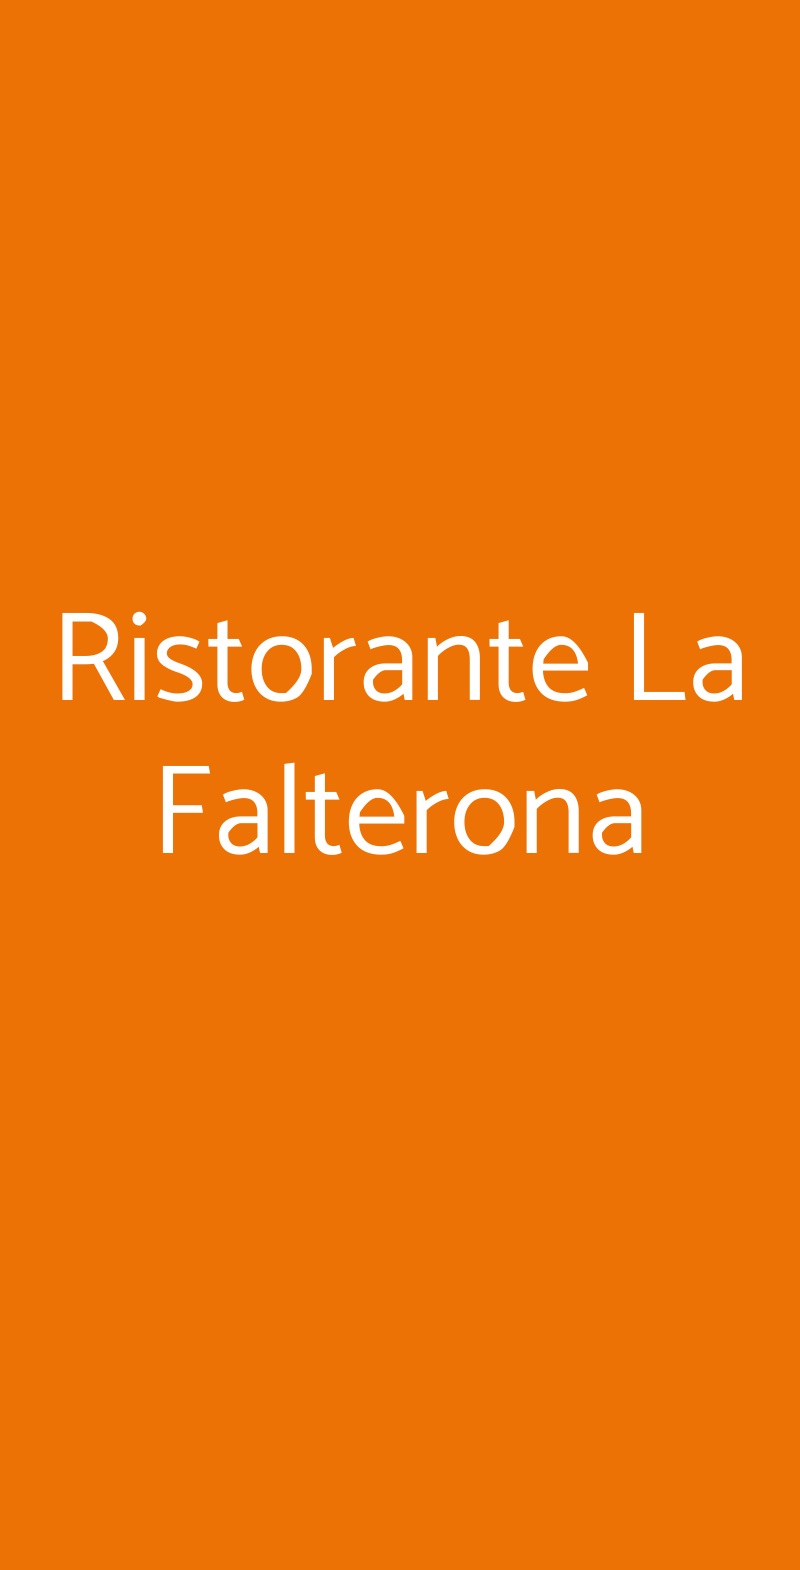 Ristorante La Falterona Firenze menù 1 pagina